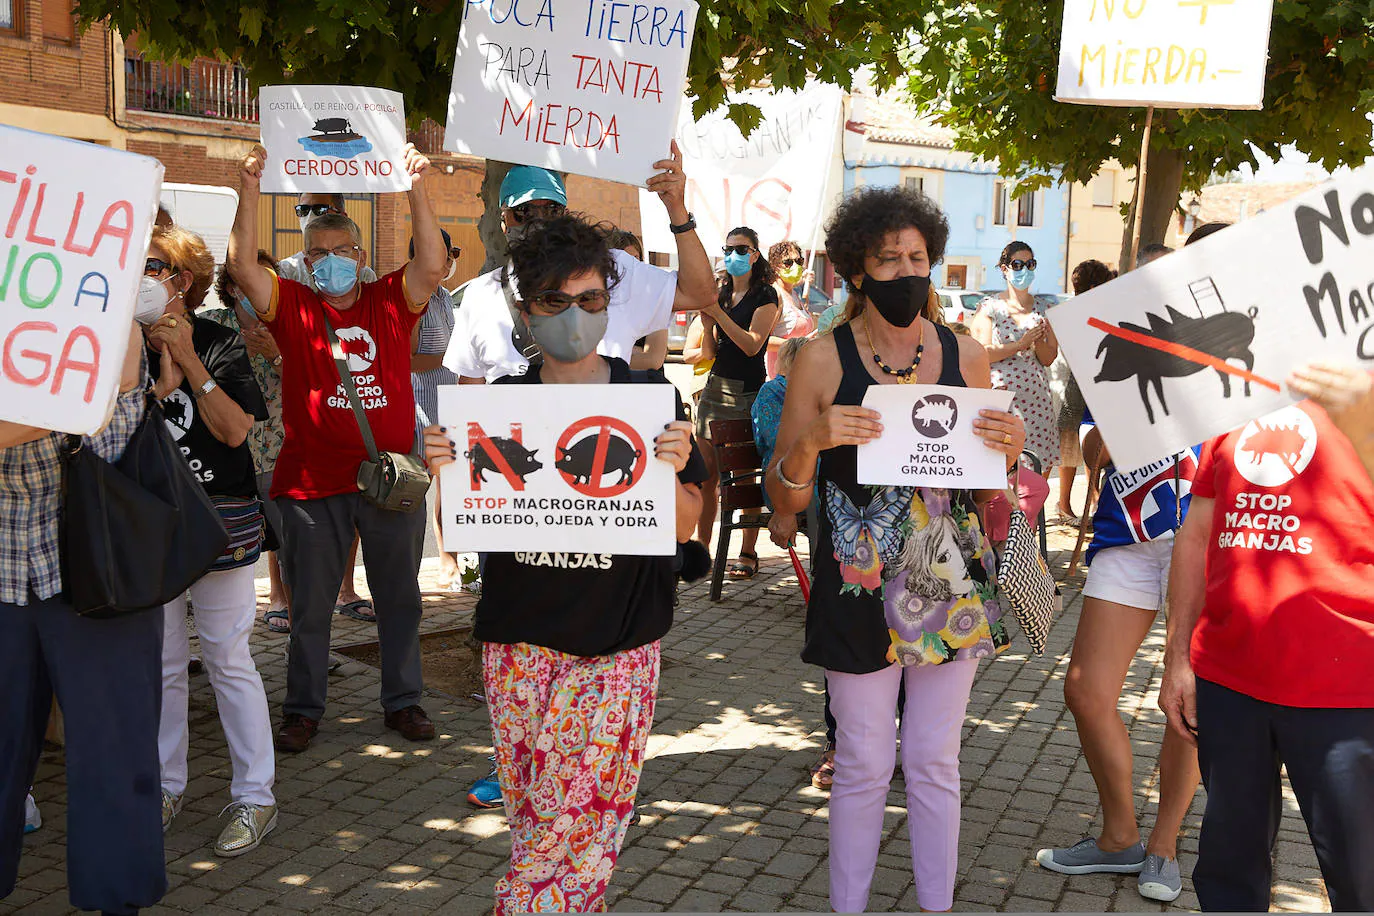 Seiscientas personas protestan contra las macrogranjas en la provincia de Palencia